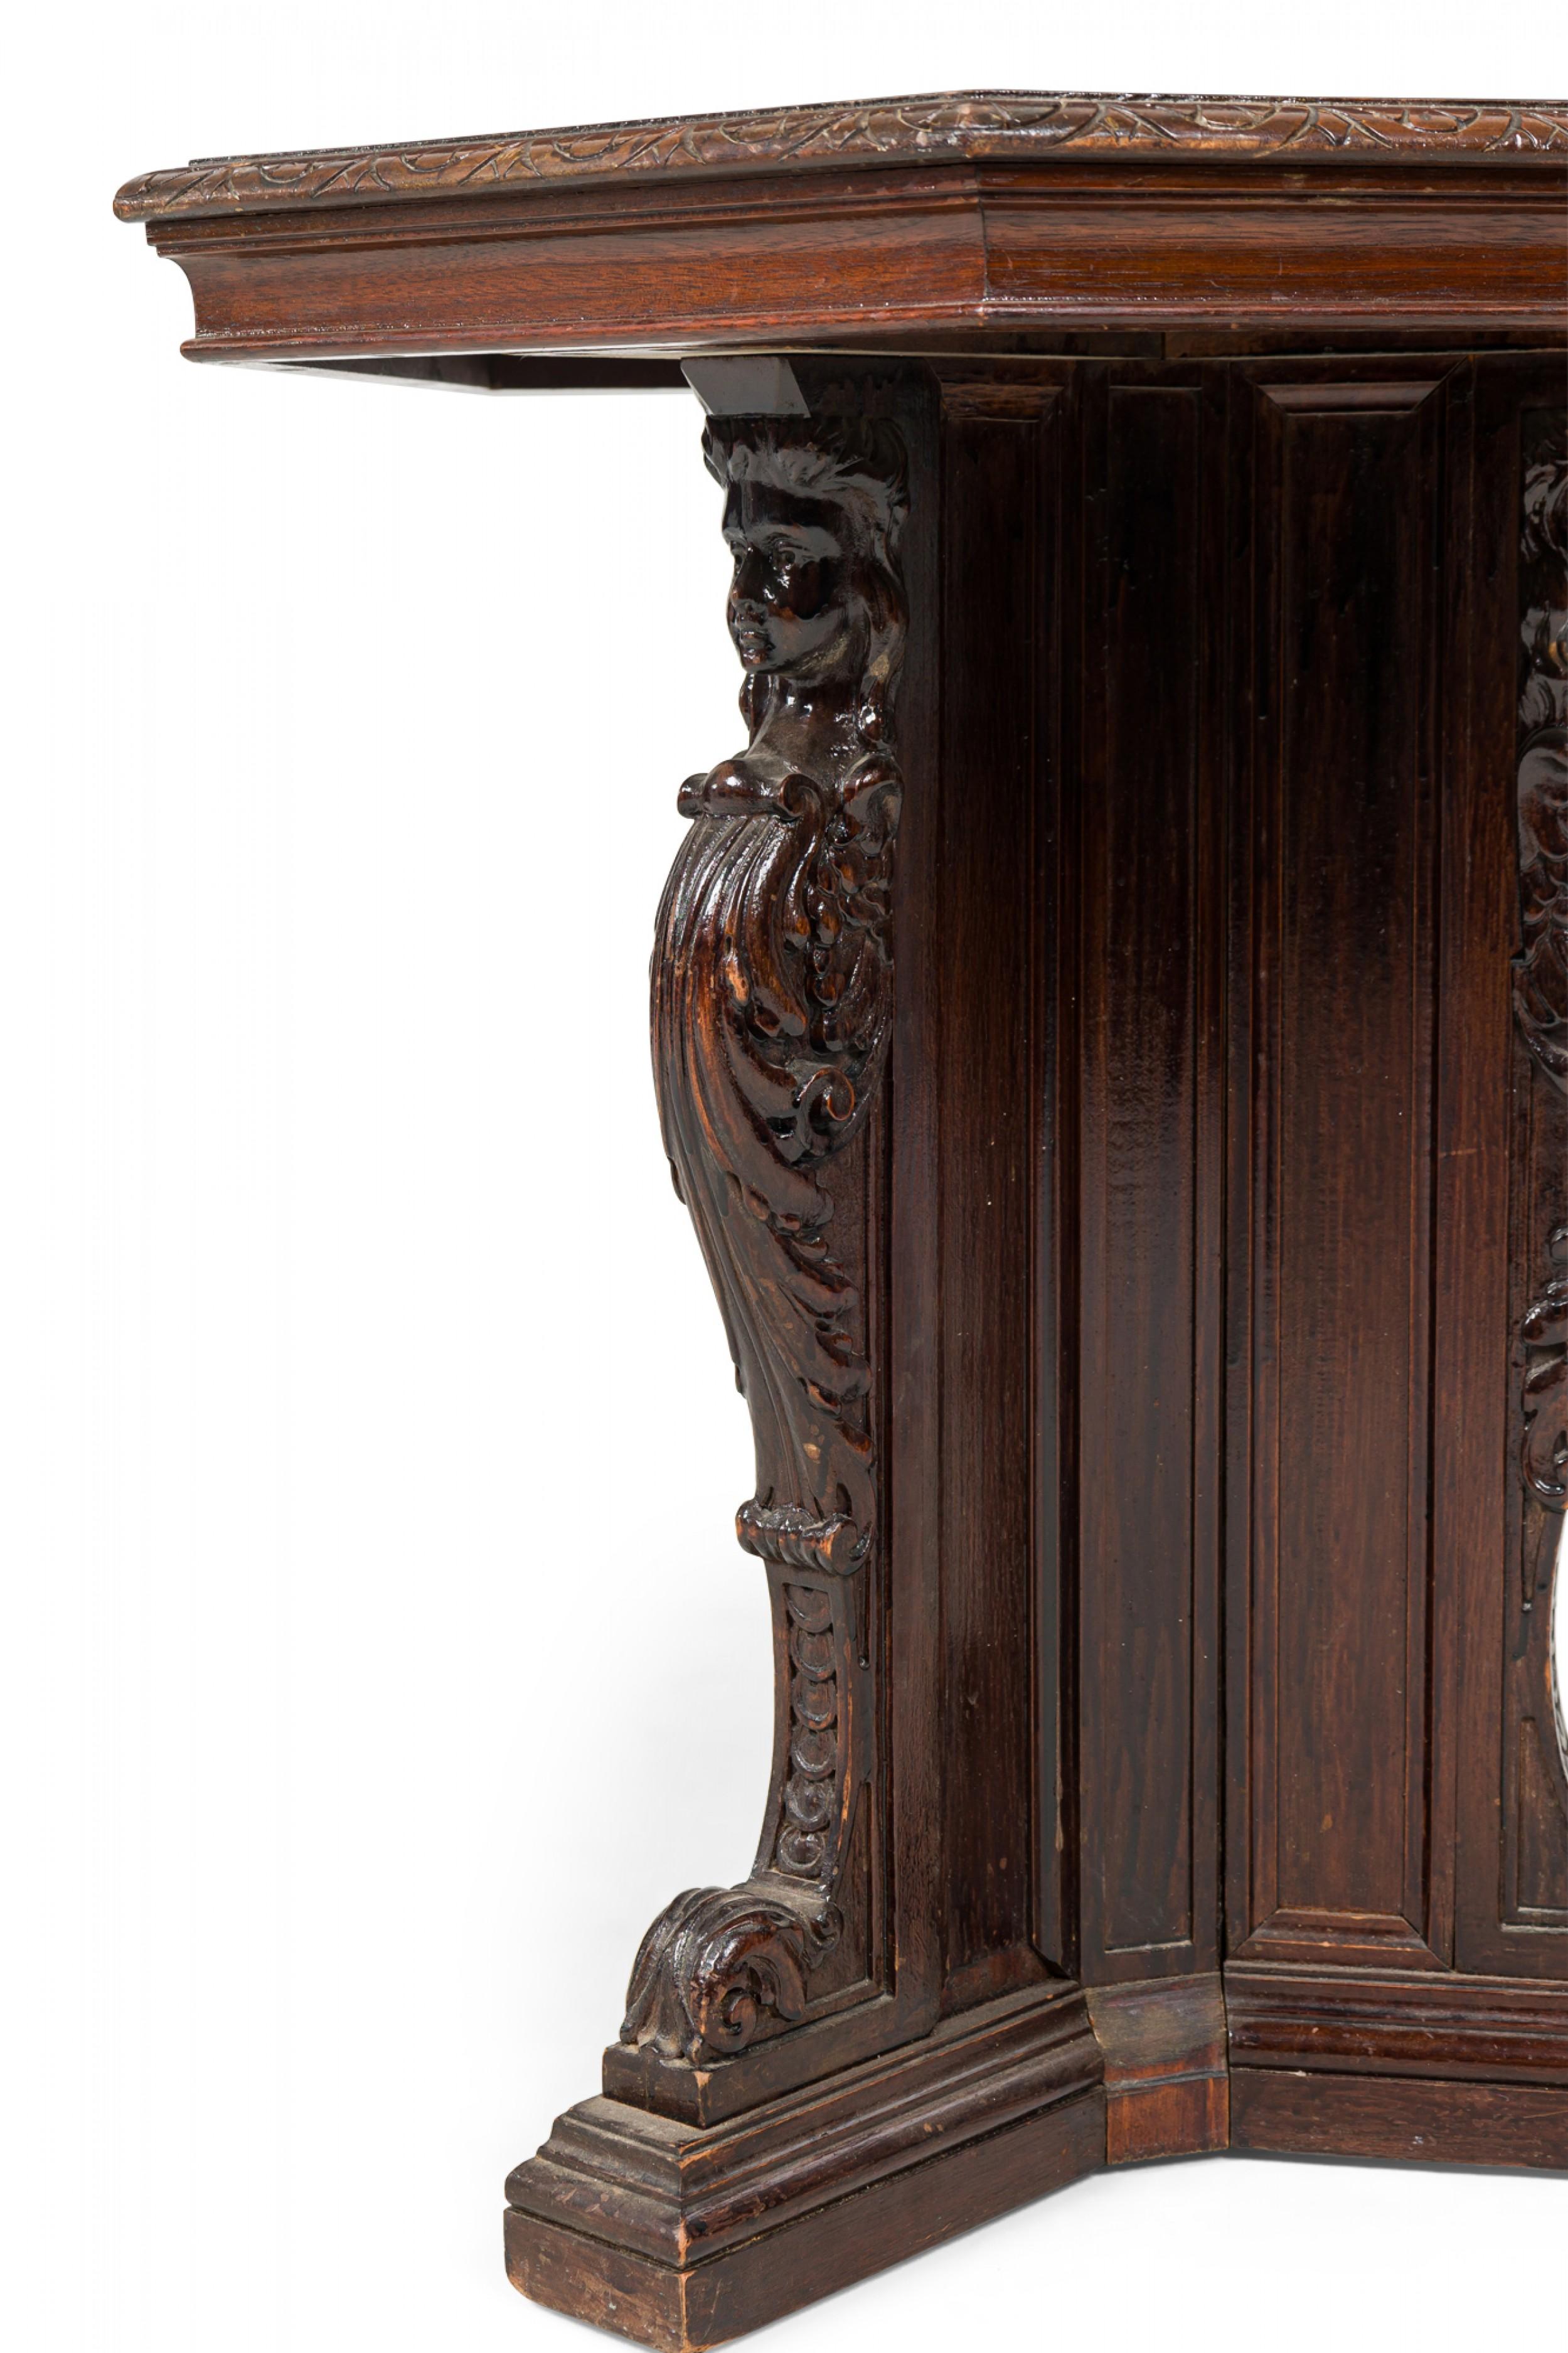 Englischer sechseckiger Beistelltisch im viktorianischen Stil mit geschnitzten Kanten, der auf einem vierbeinigen Sockel mit dekorativer Schnitzerei ruht.